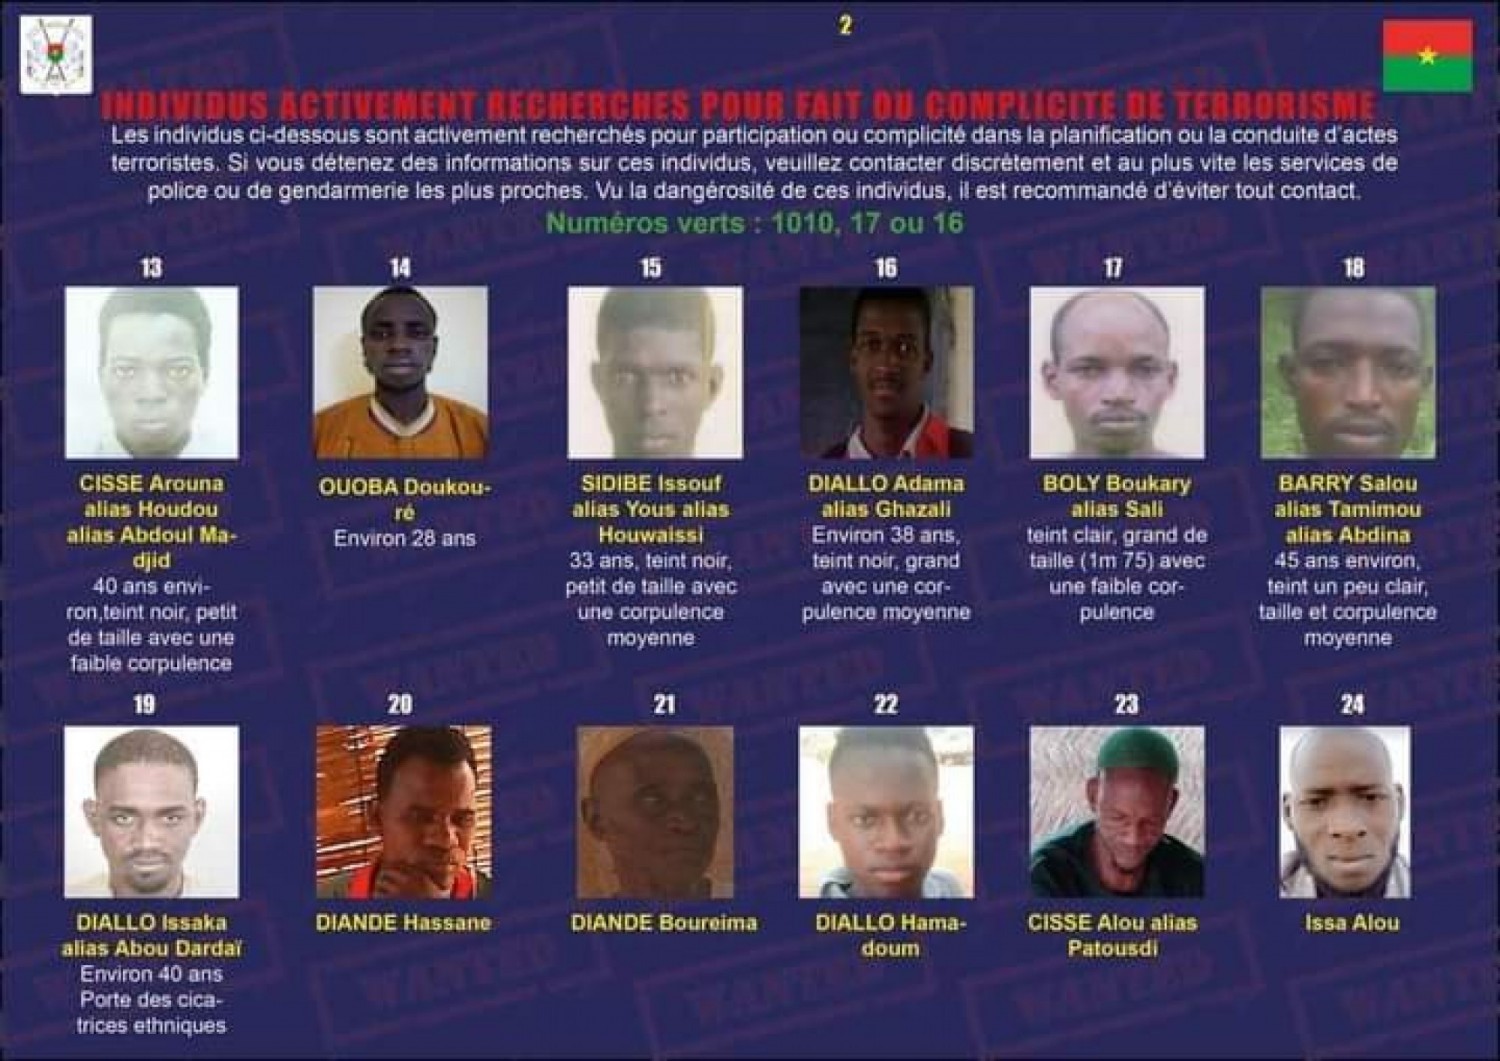 Burkina : 46 personnes activement recherchées pour participation ou complicité d'actes terroristes